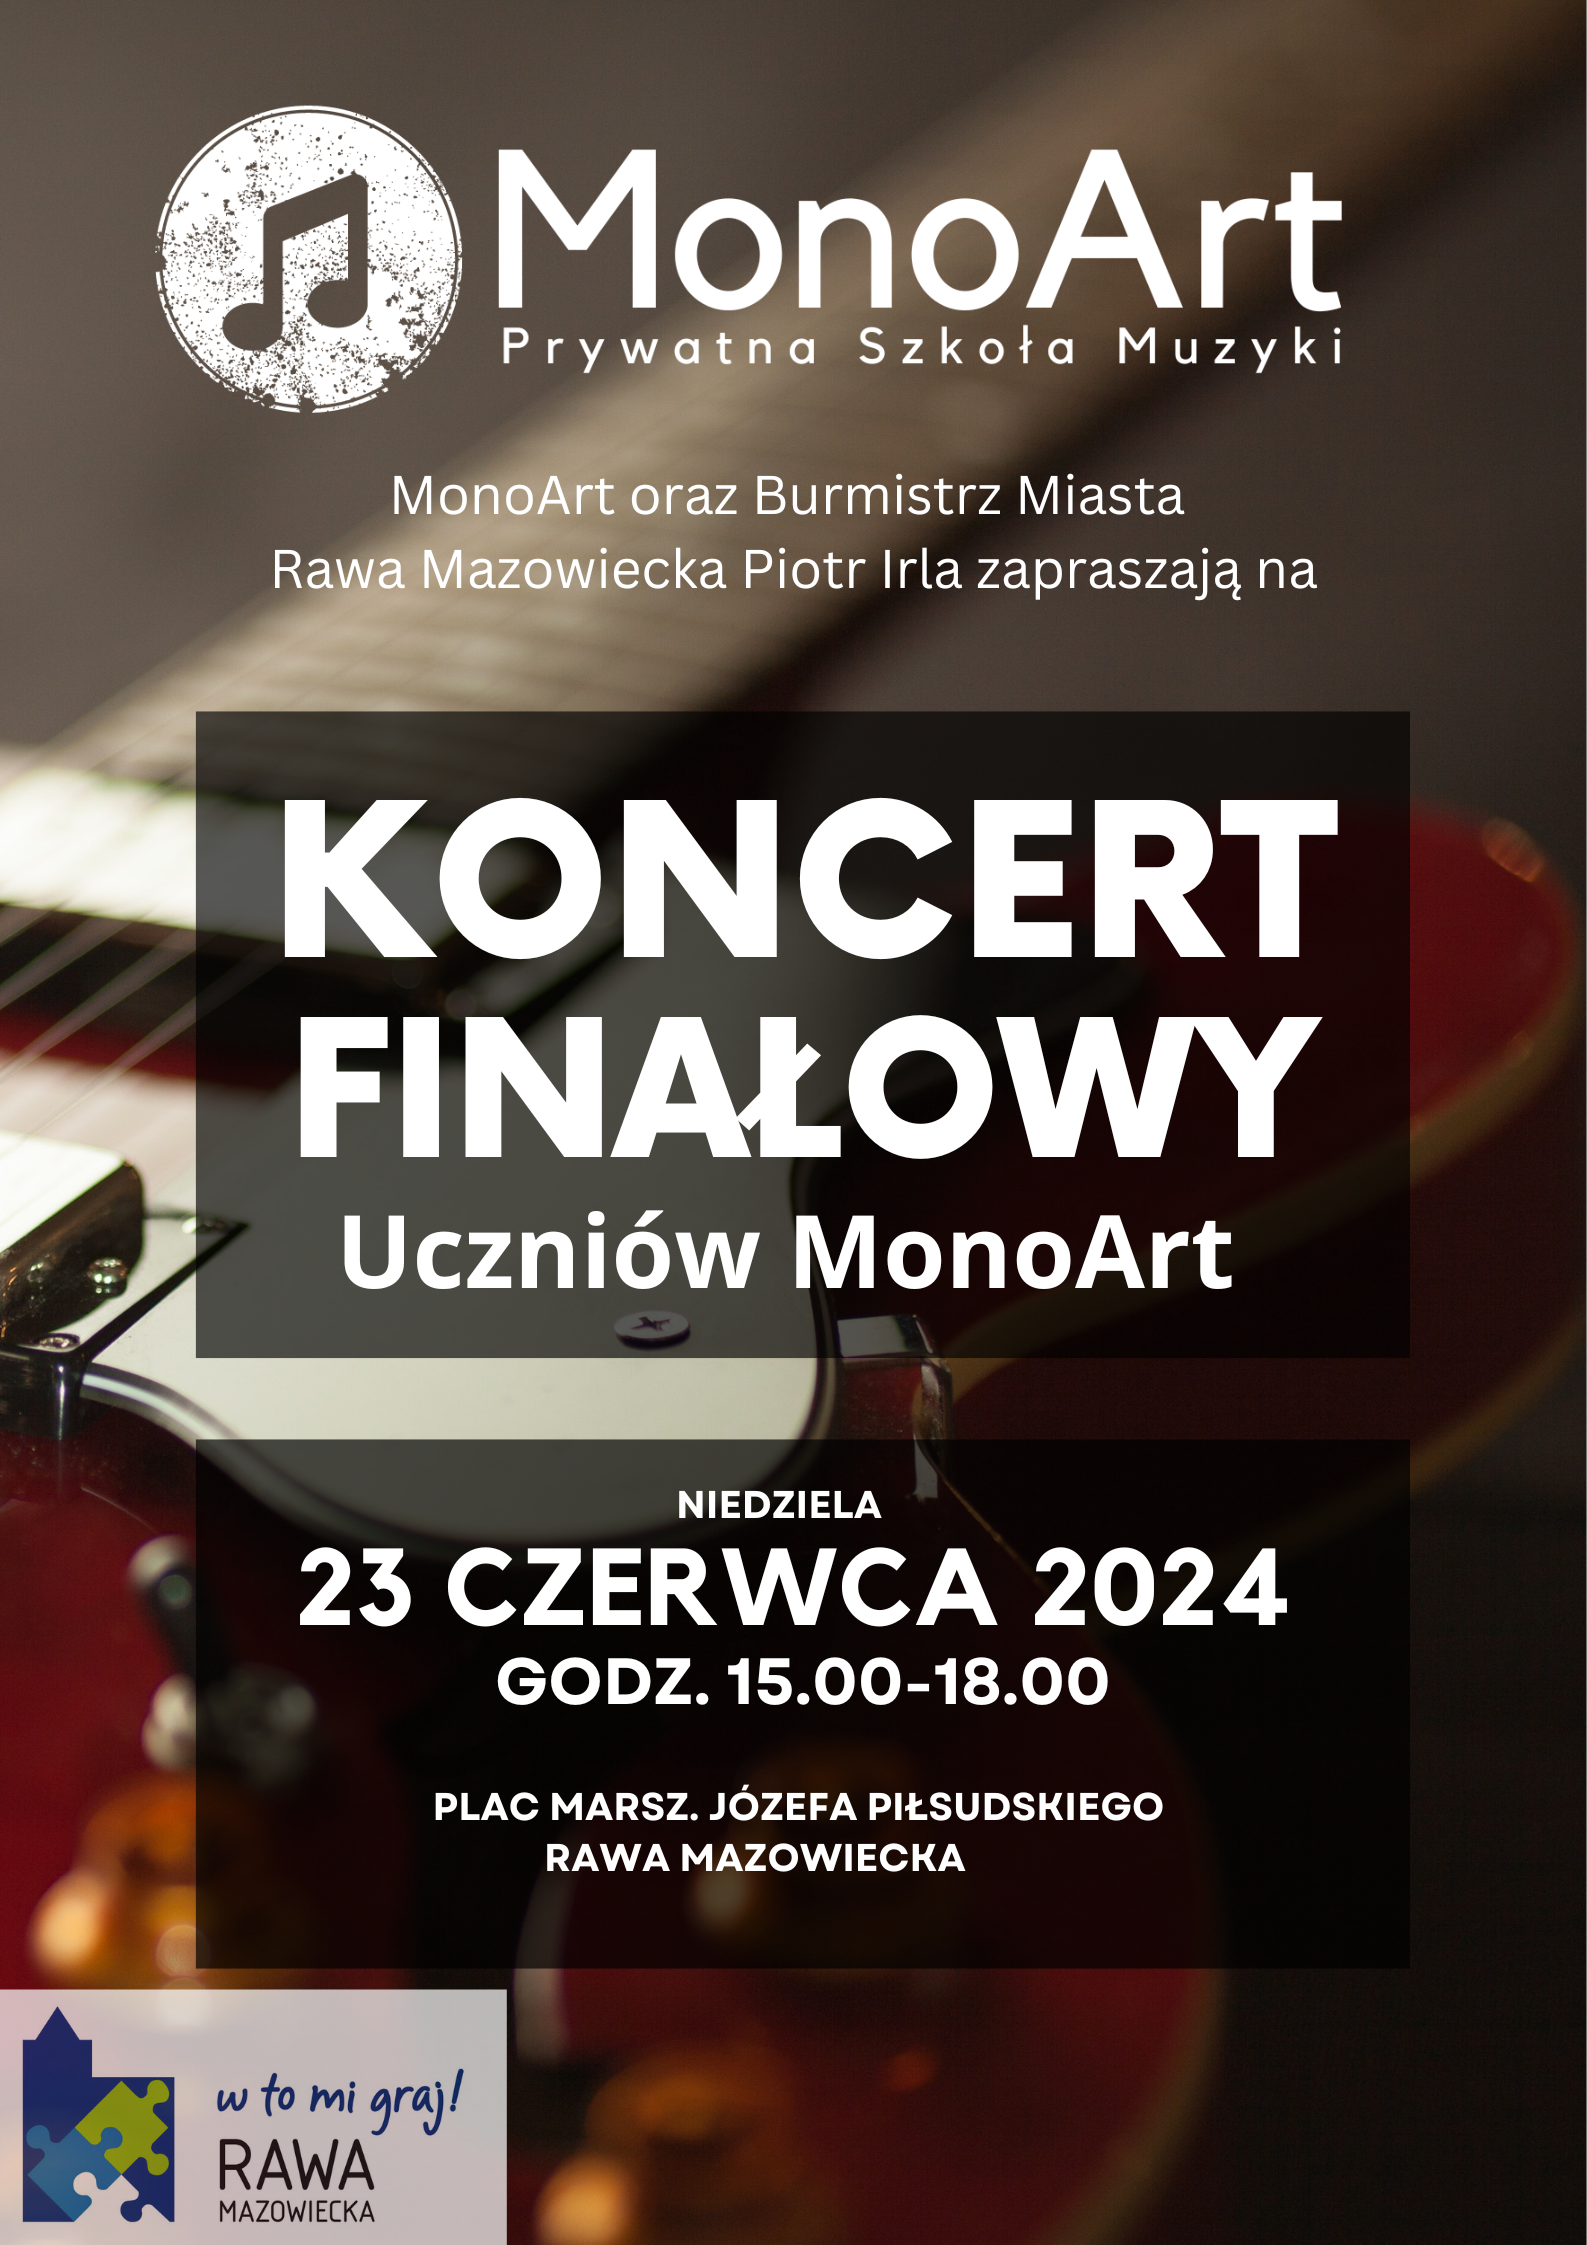 Finałowy Koncert Uczniów MonoArt